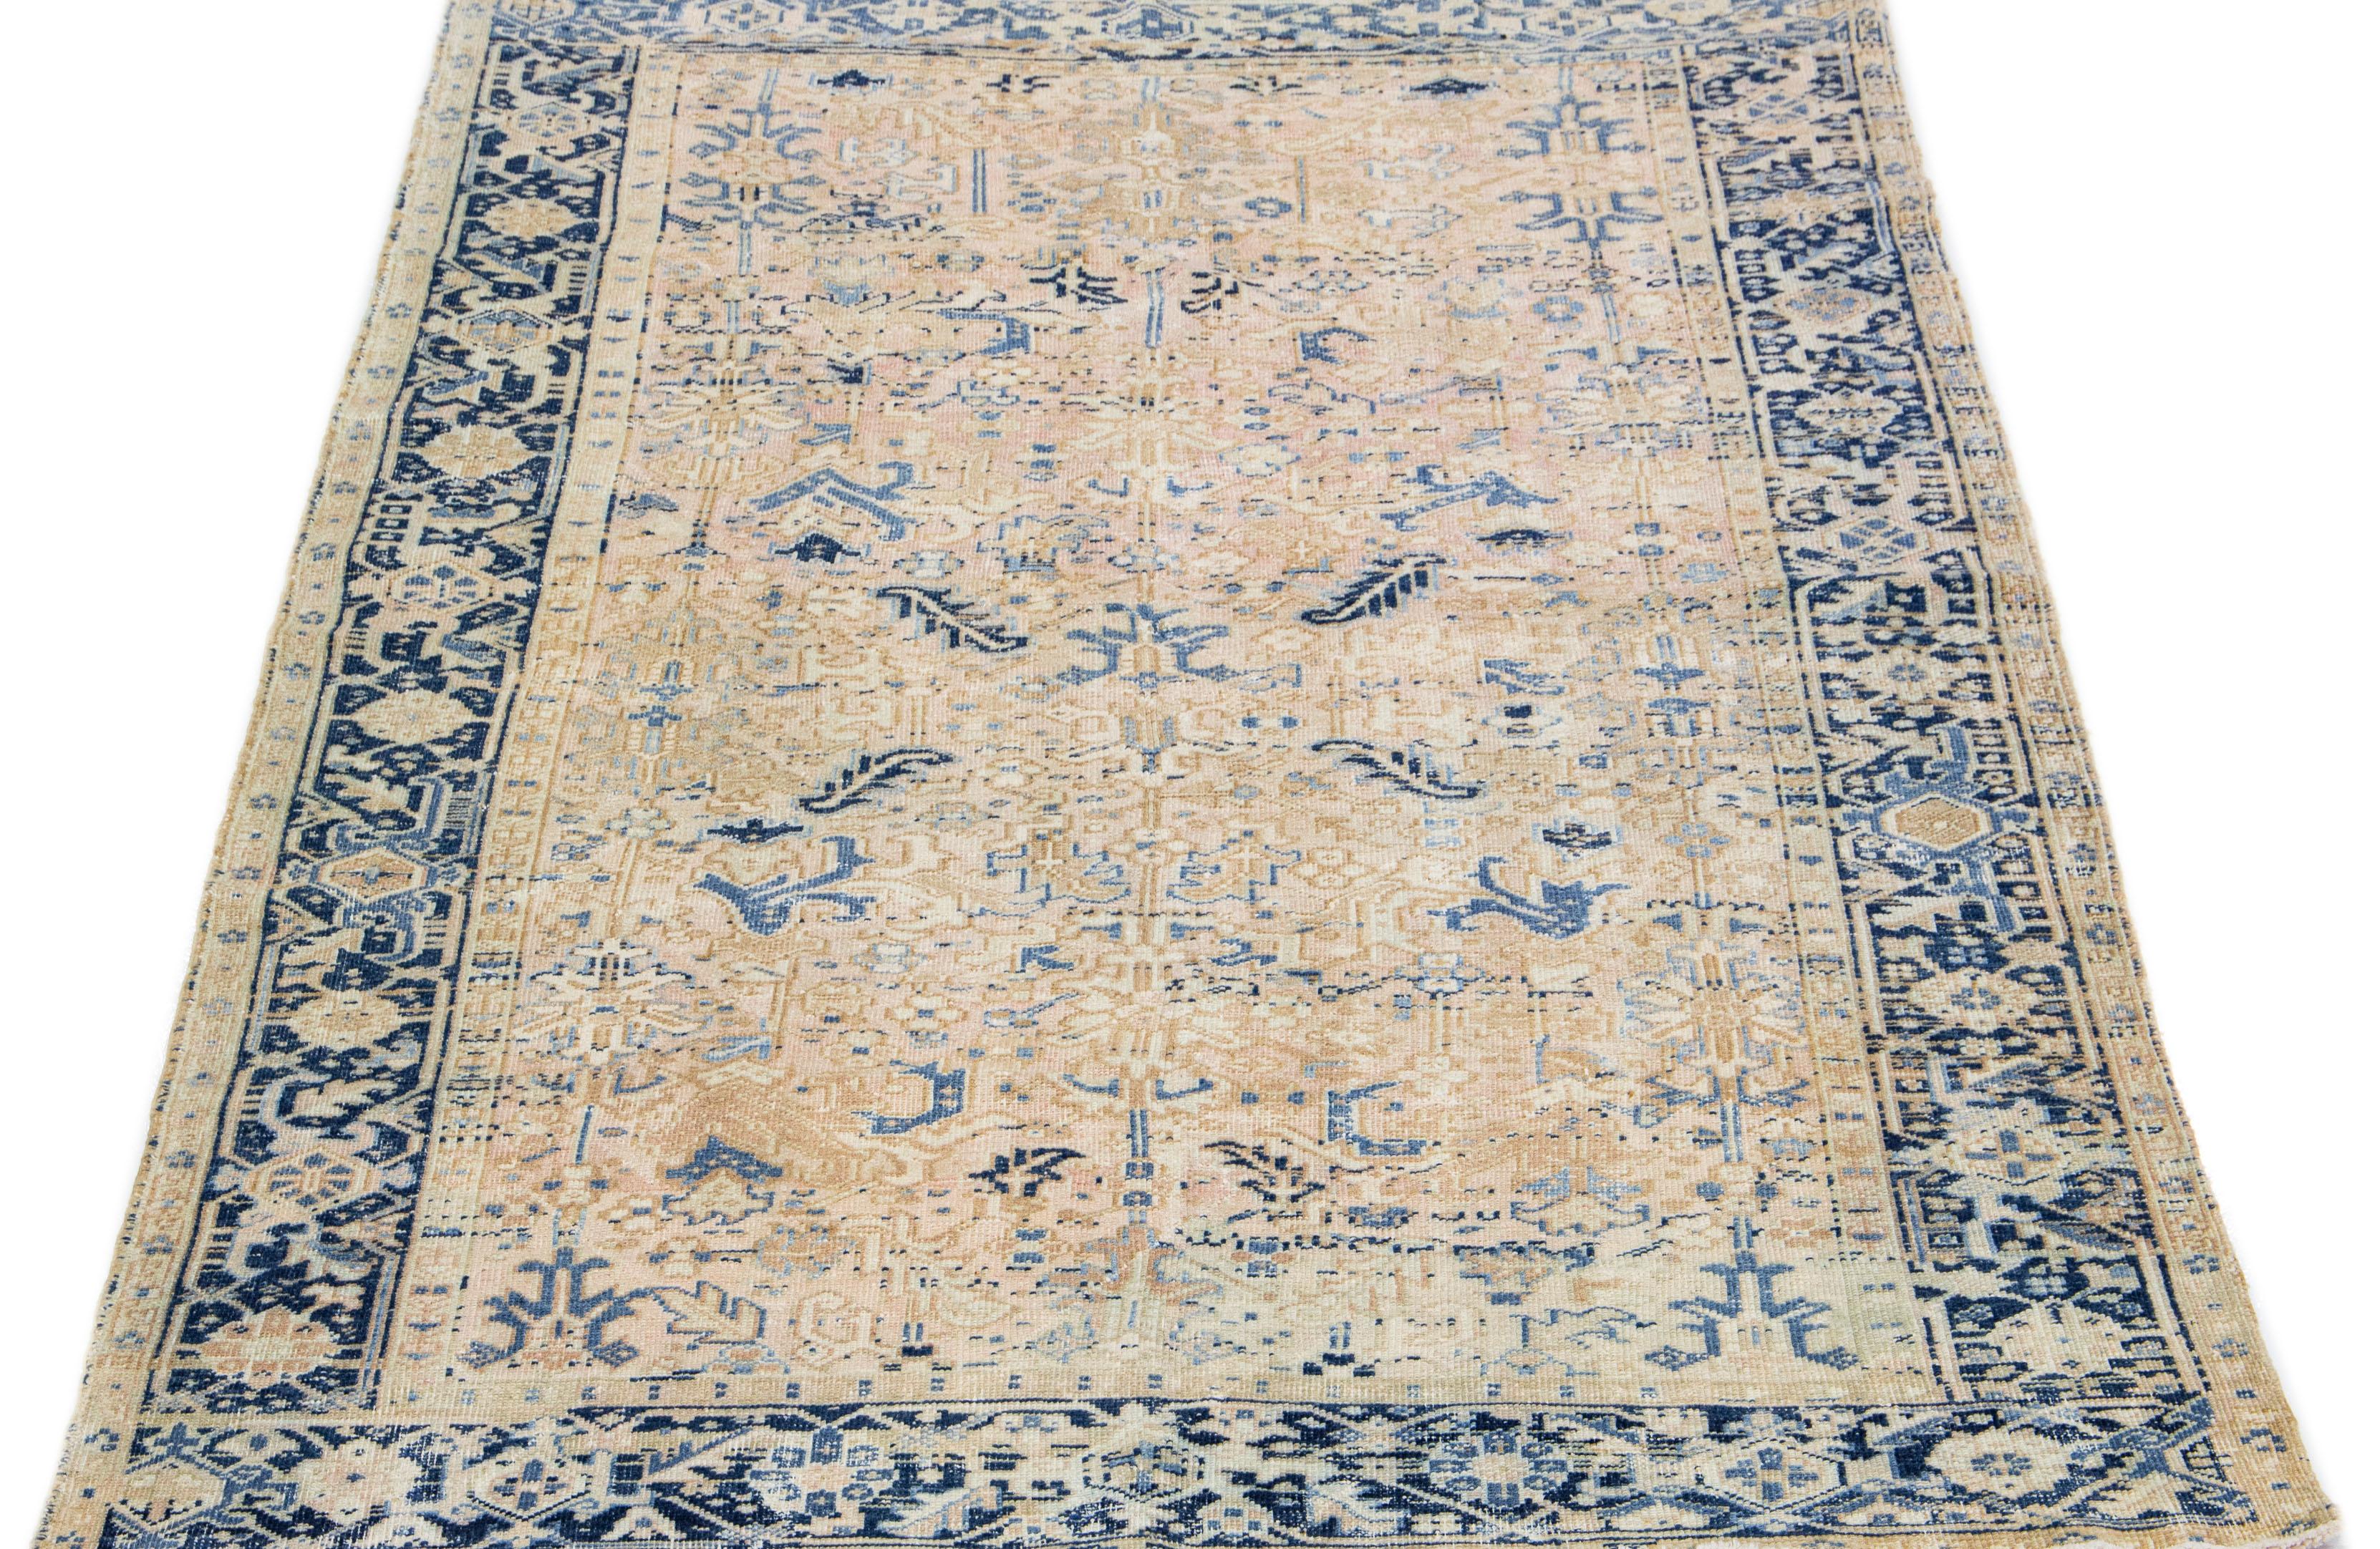 Der antike Heriz-Teppich strahlt mit seiner hochwertigen, handgeknüpften Wolle und dem markanten Allover-Muster zeitlose Eleganz und Raffinesse aus. Das auffällige geometrische Blumenmuster in Blau- und Beigetönen verleiht dem zarten